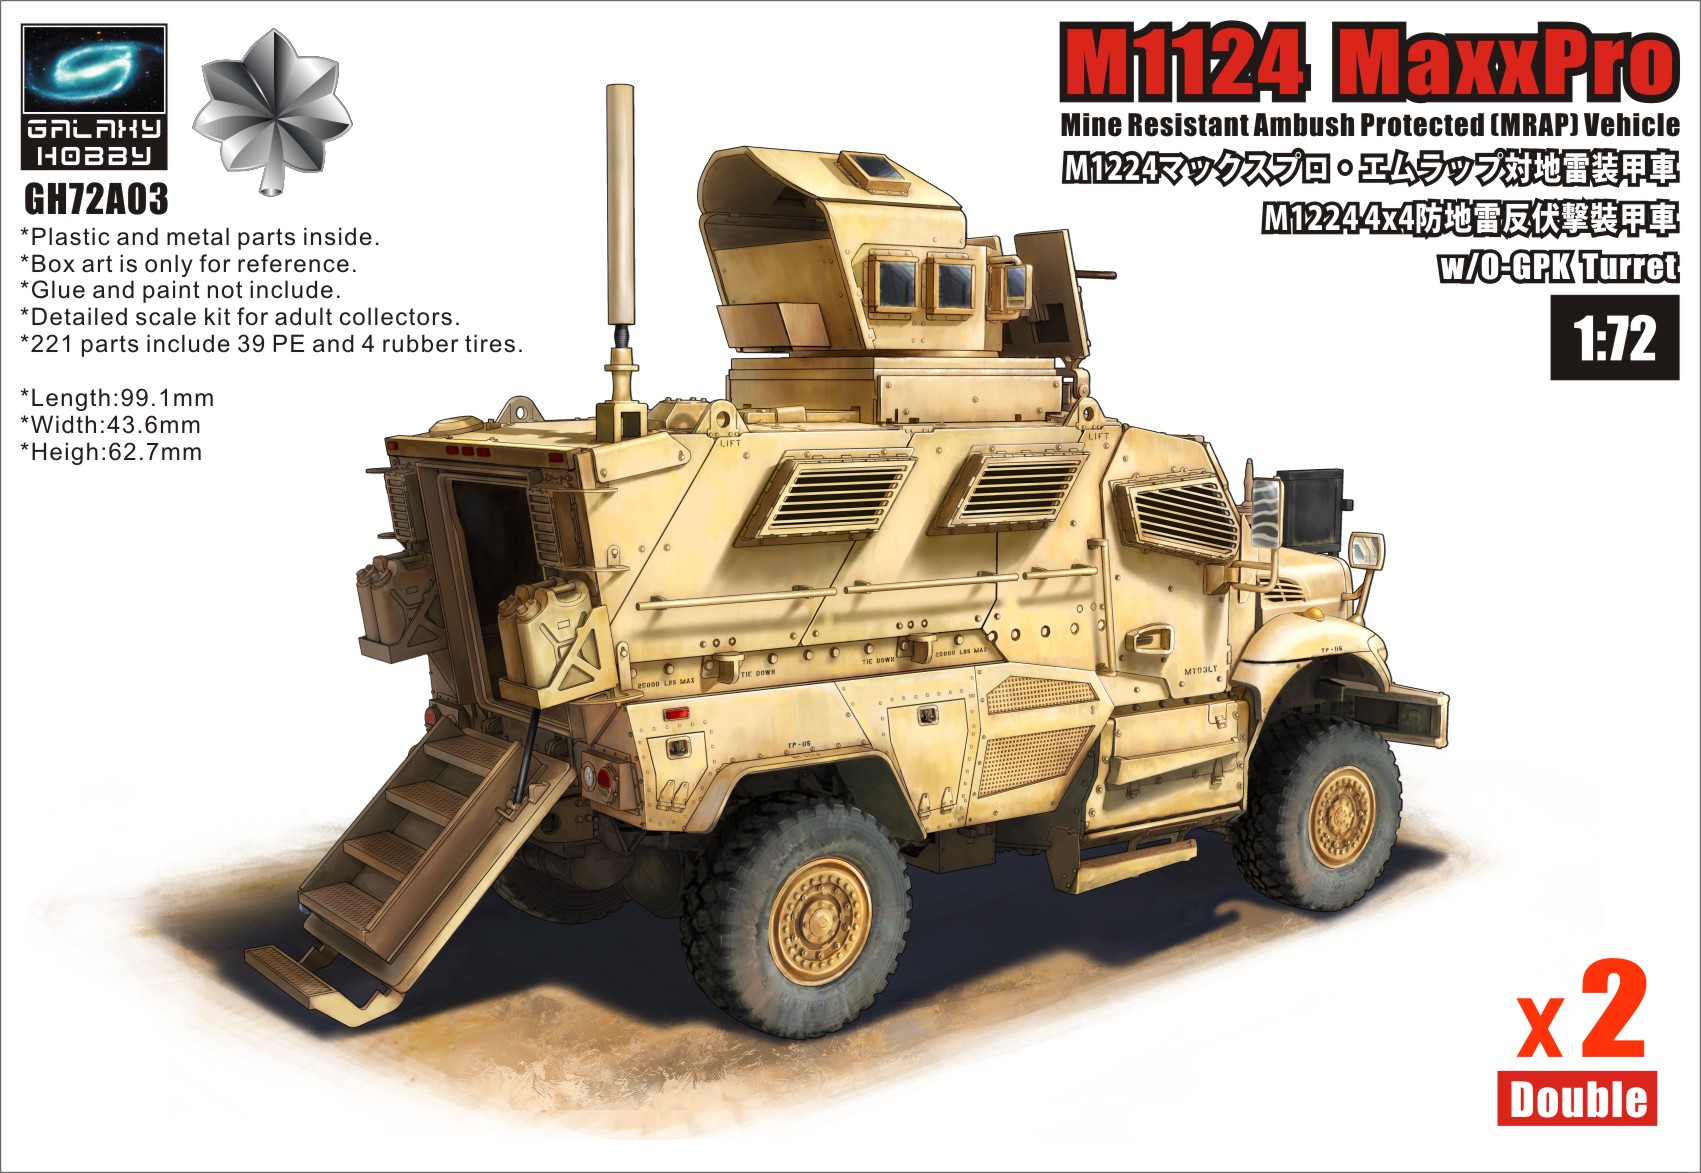 M1224 Maxx Pro MRAP with OGPK turret